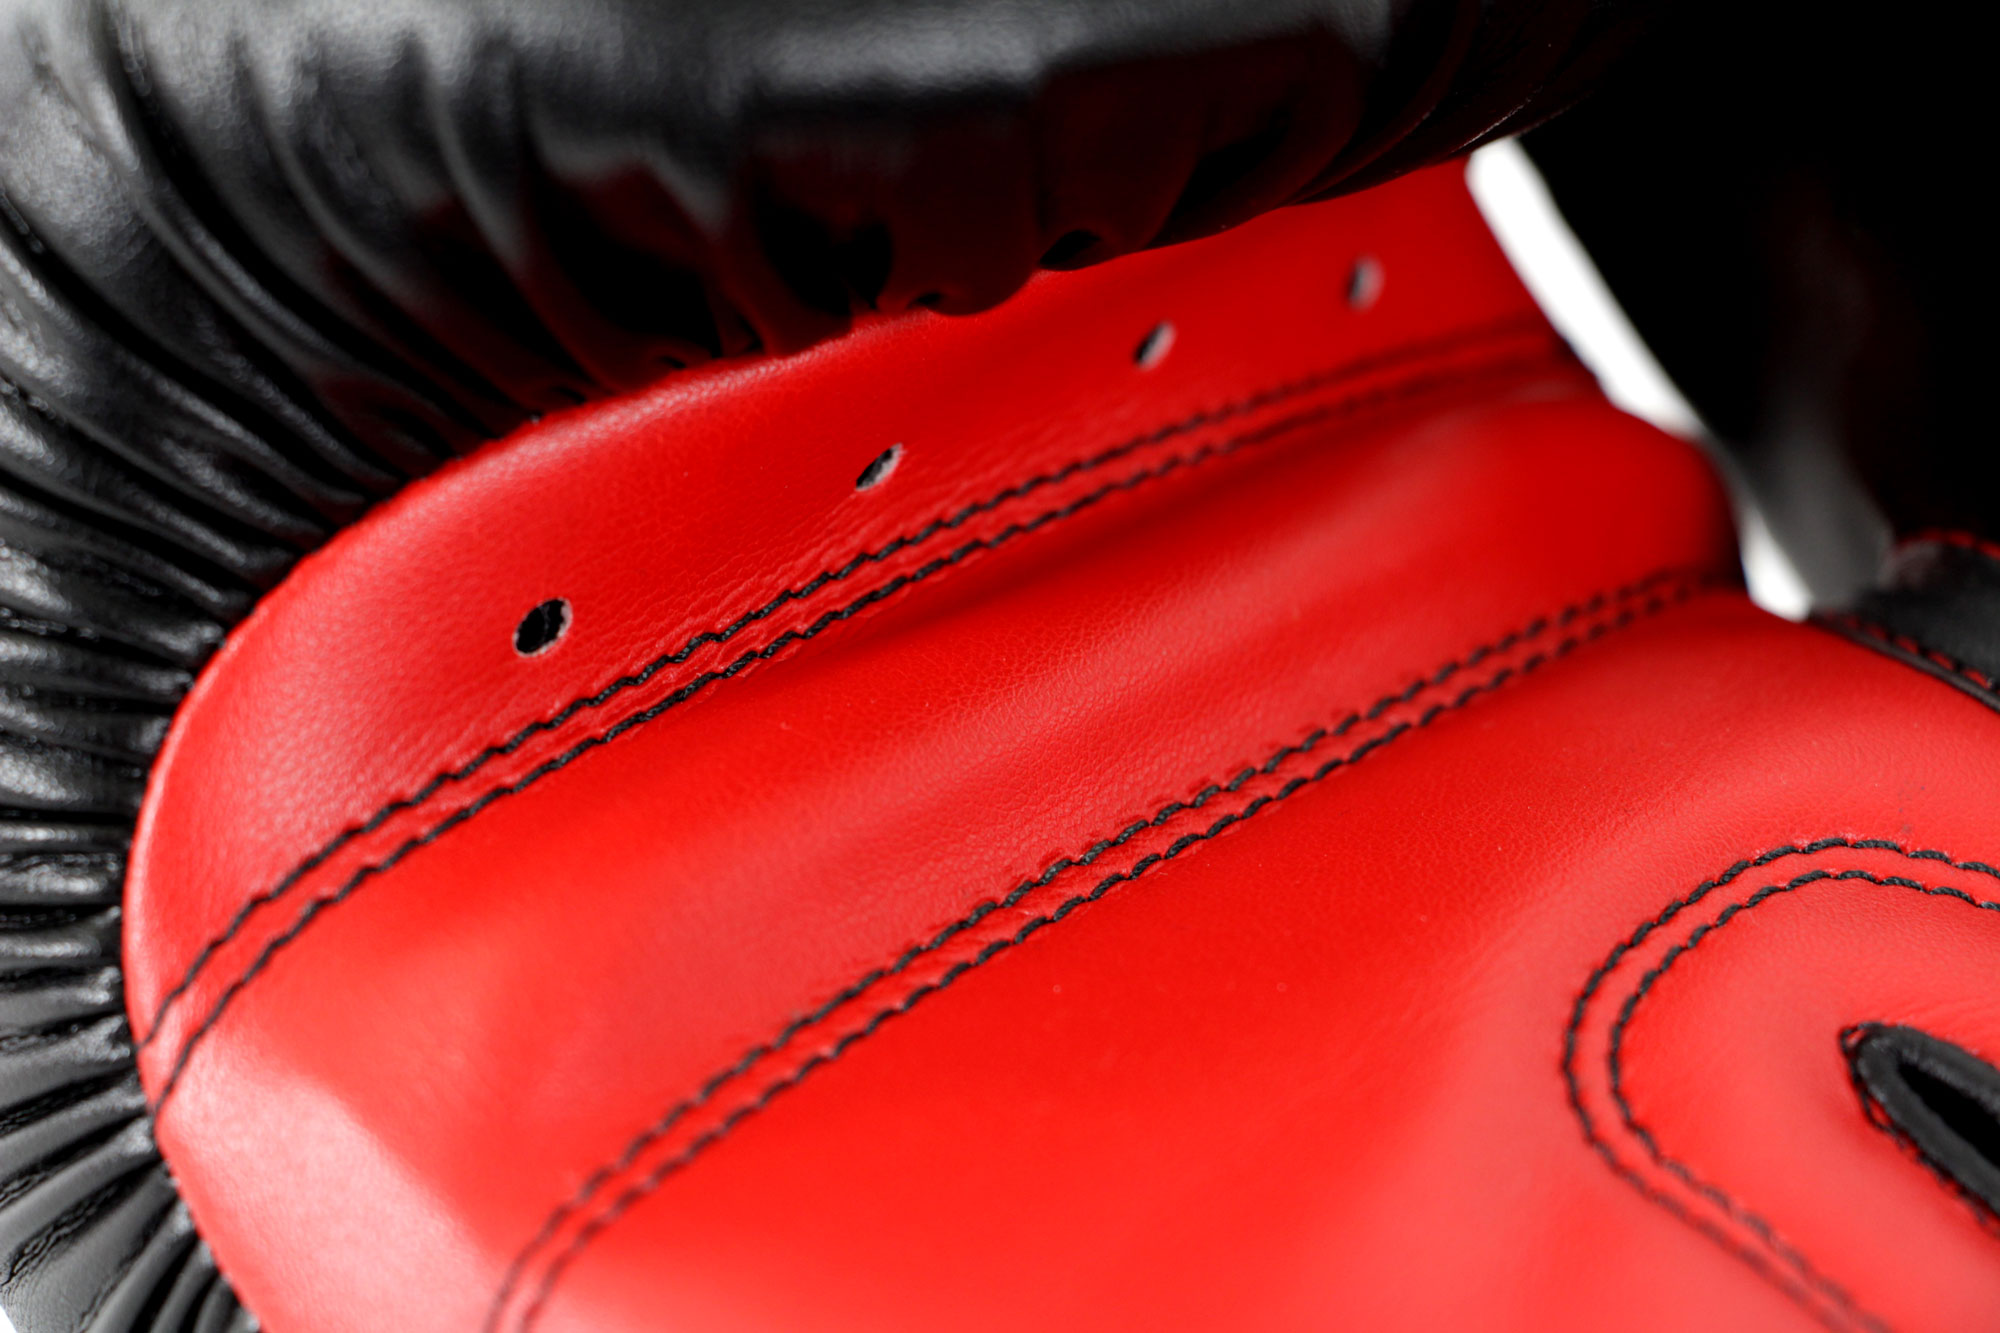 Боксьорски ръкавици adidas